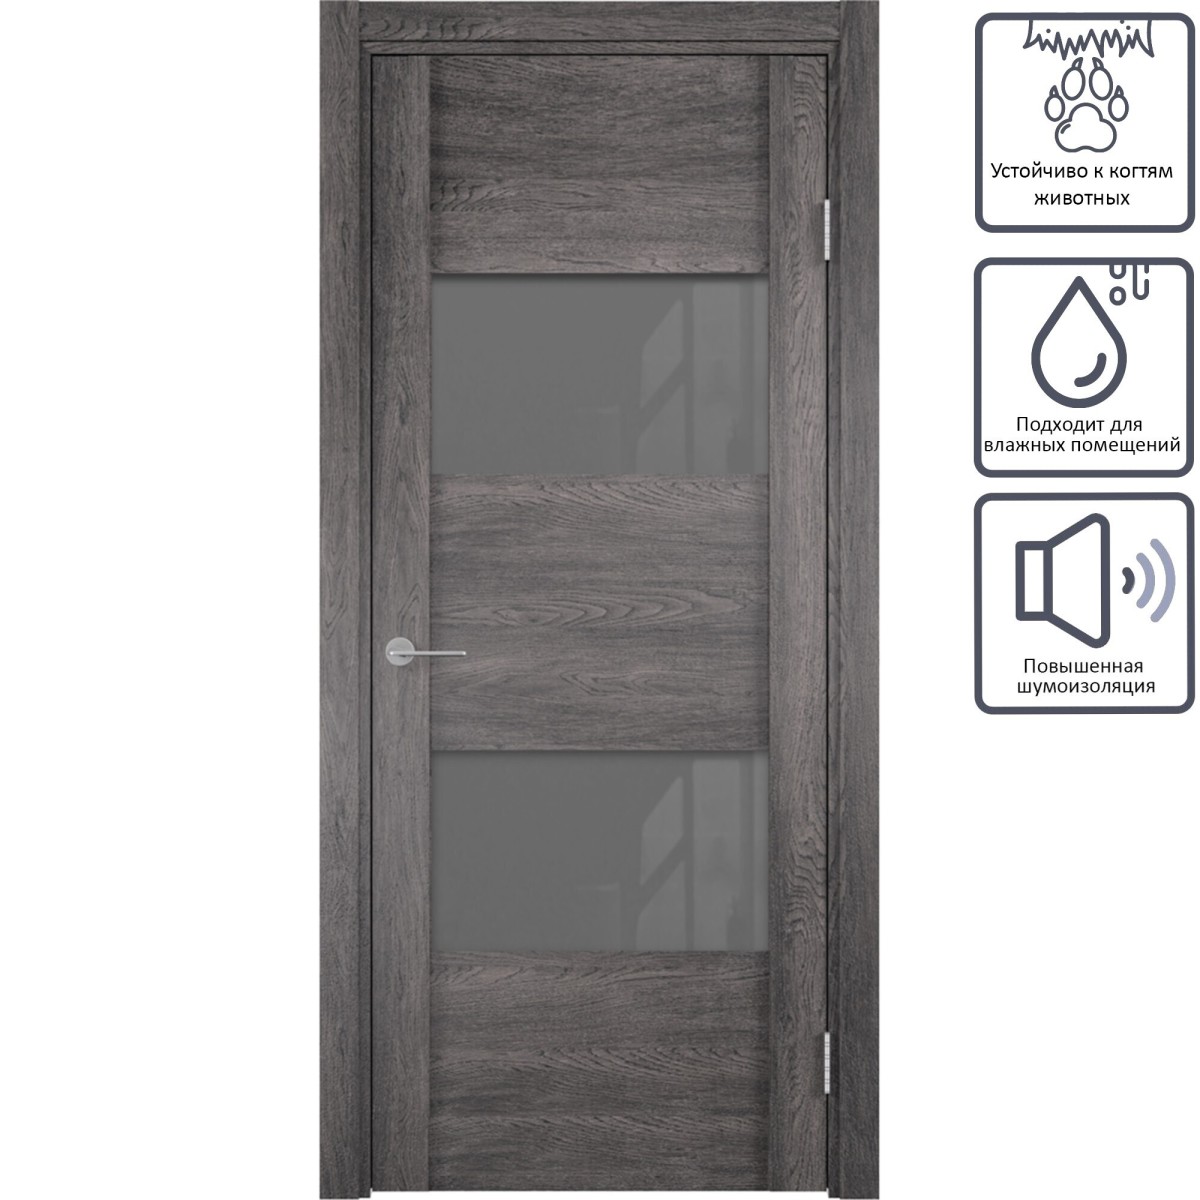 Дверь межкомнатная остеклённая с замком в комплекте Квадро 80x200 см ПВХ цвет серый